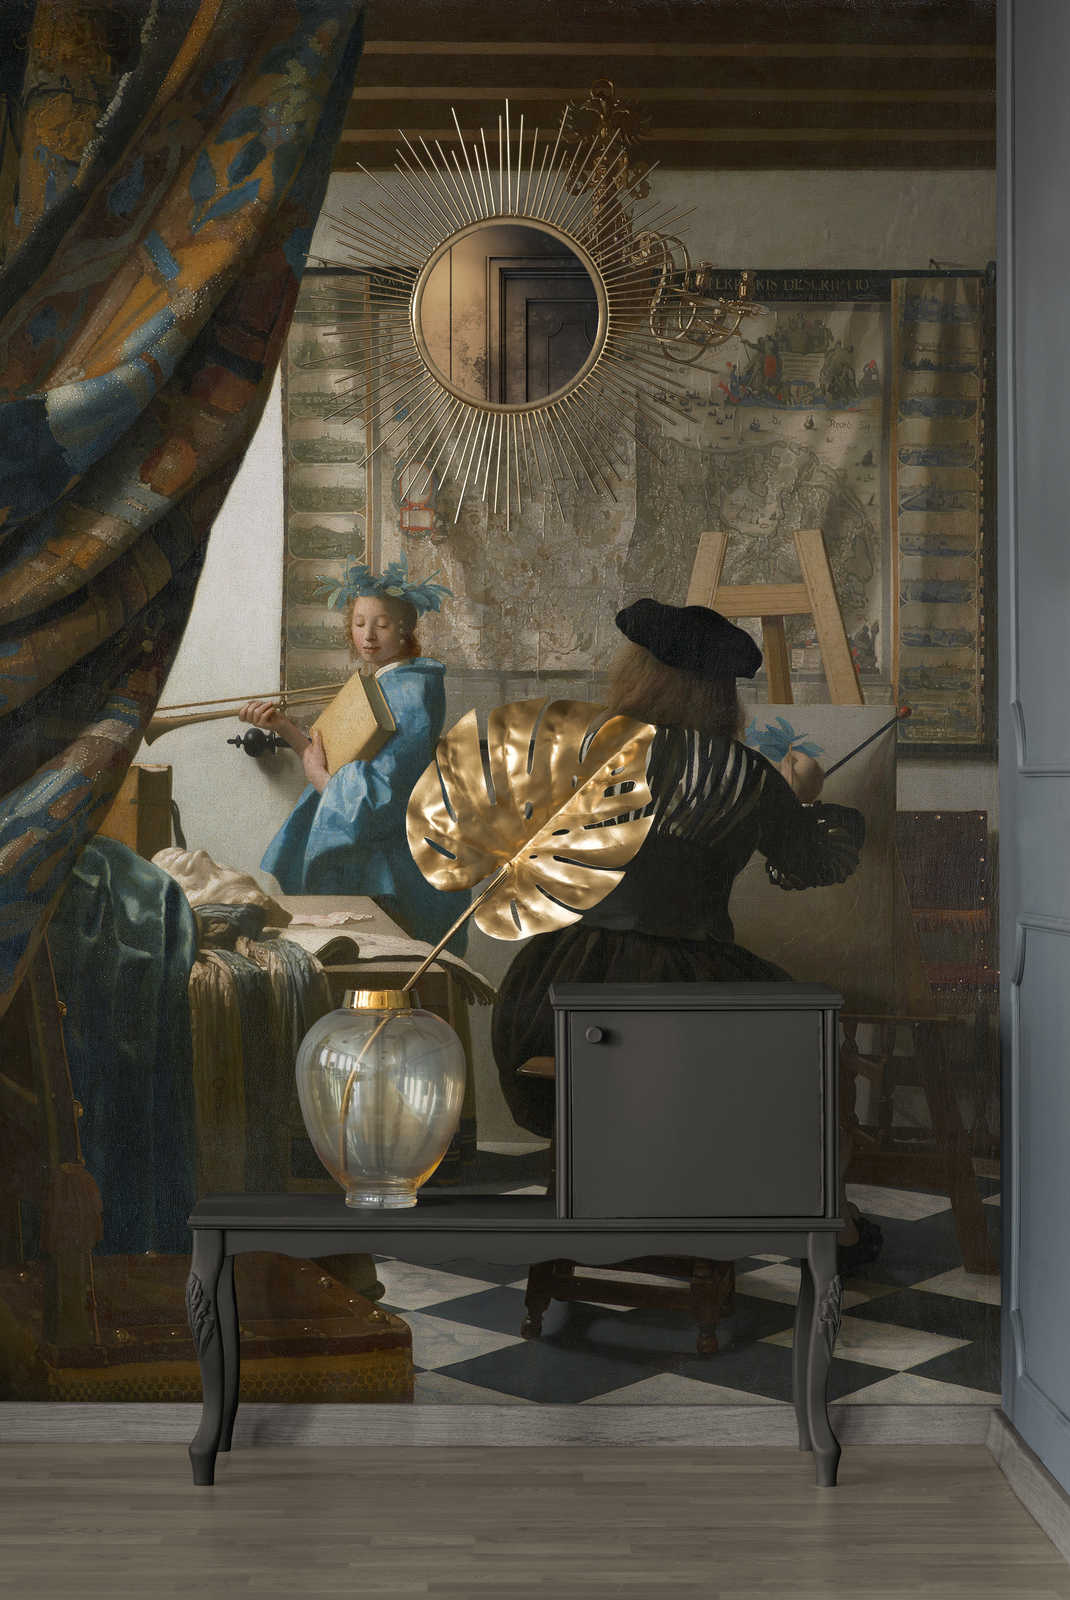             Fototapete "Vermeer in seinem Atelier" von Jan Vermeer
        